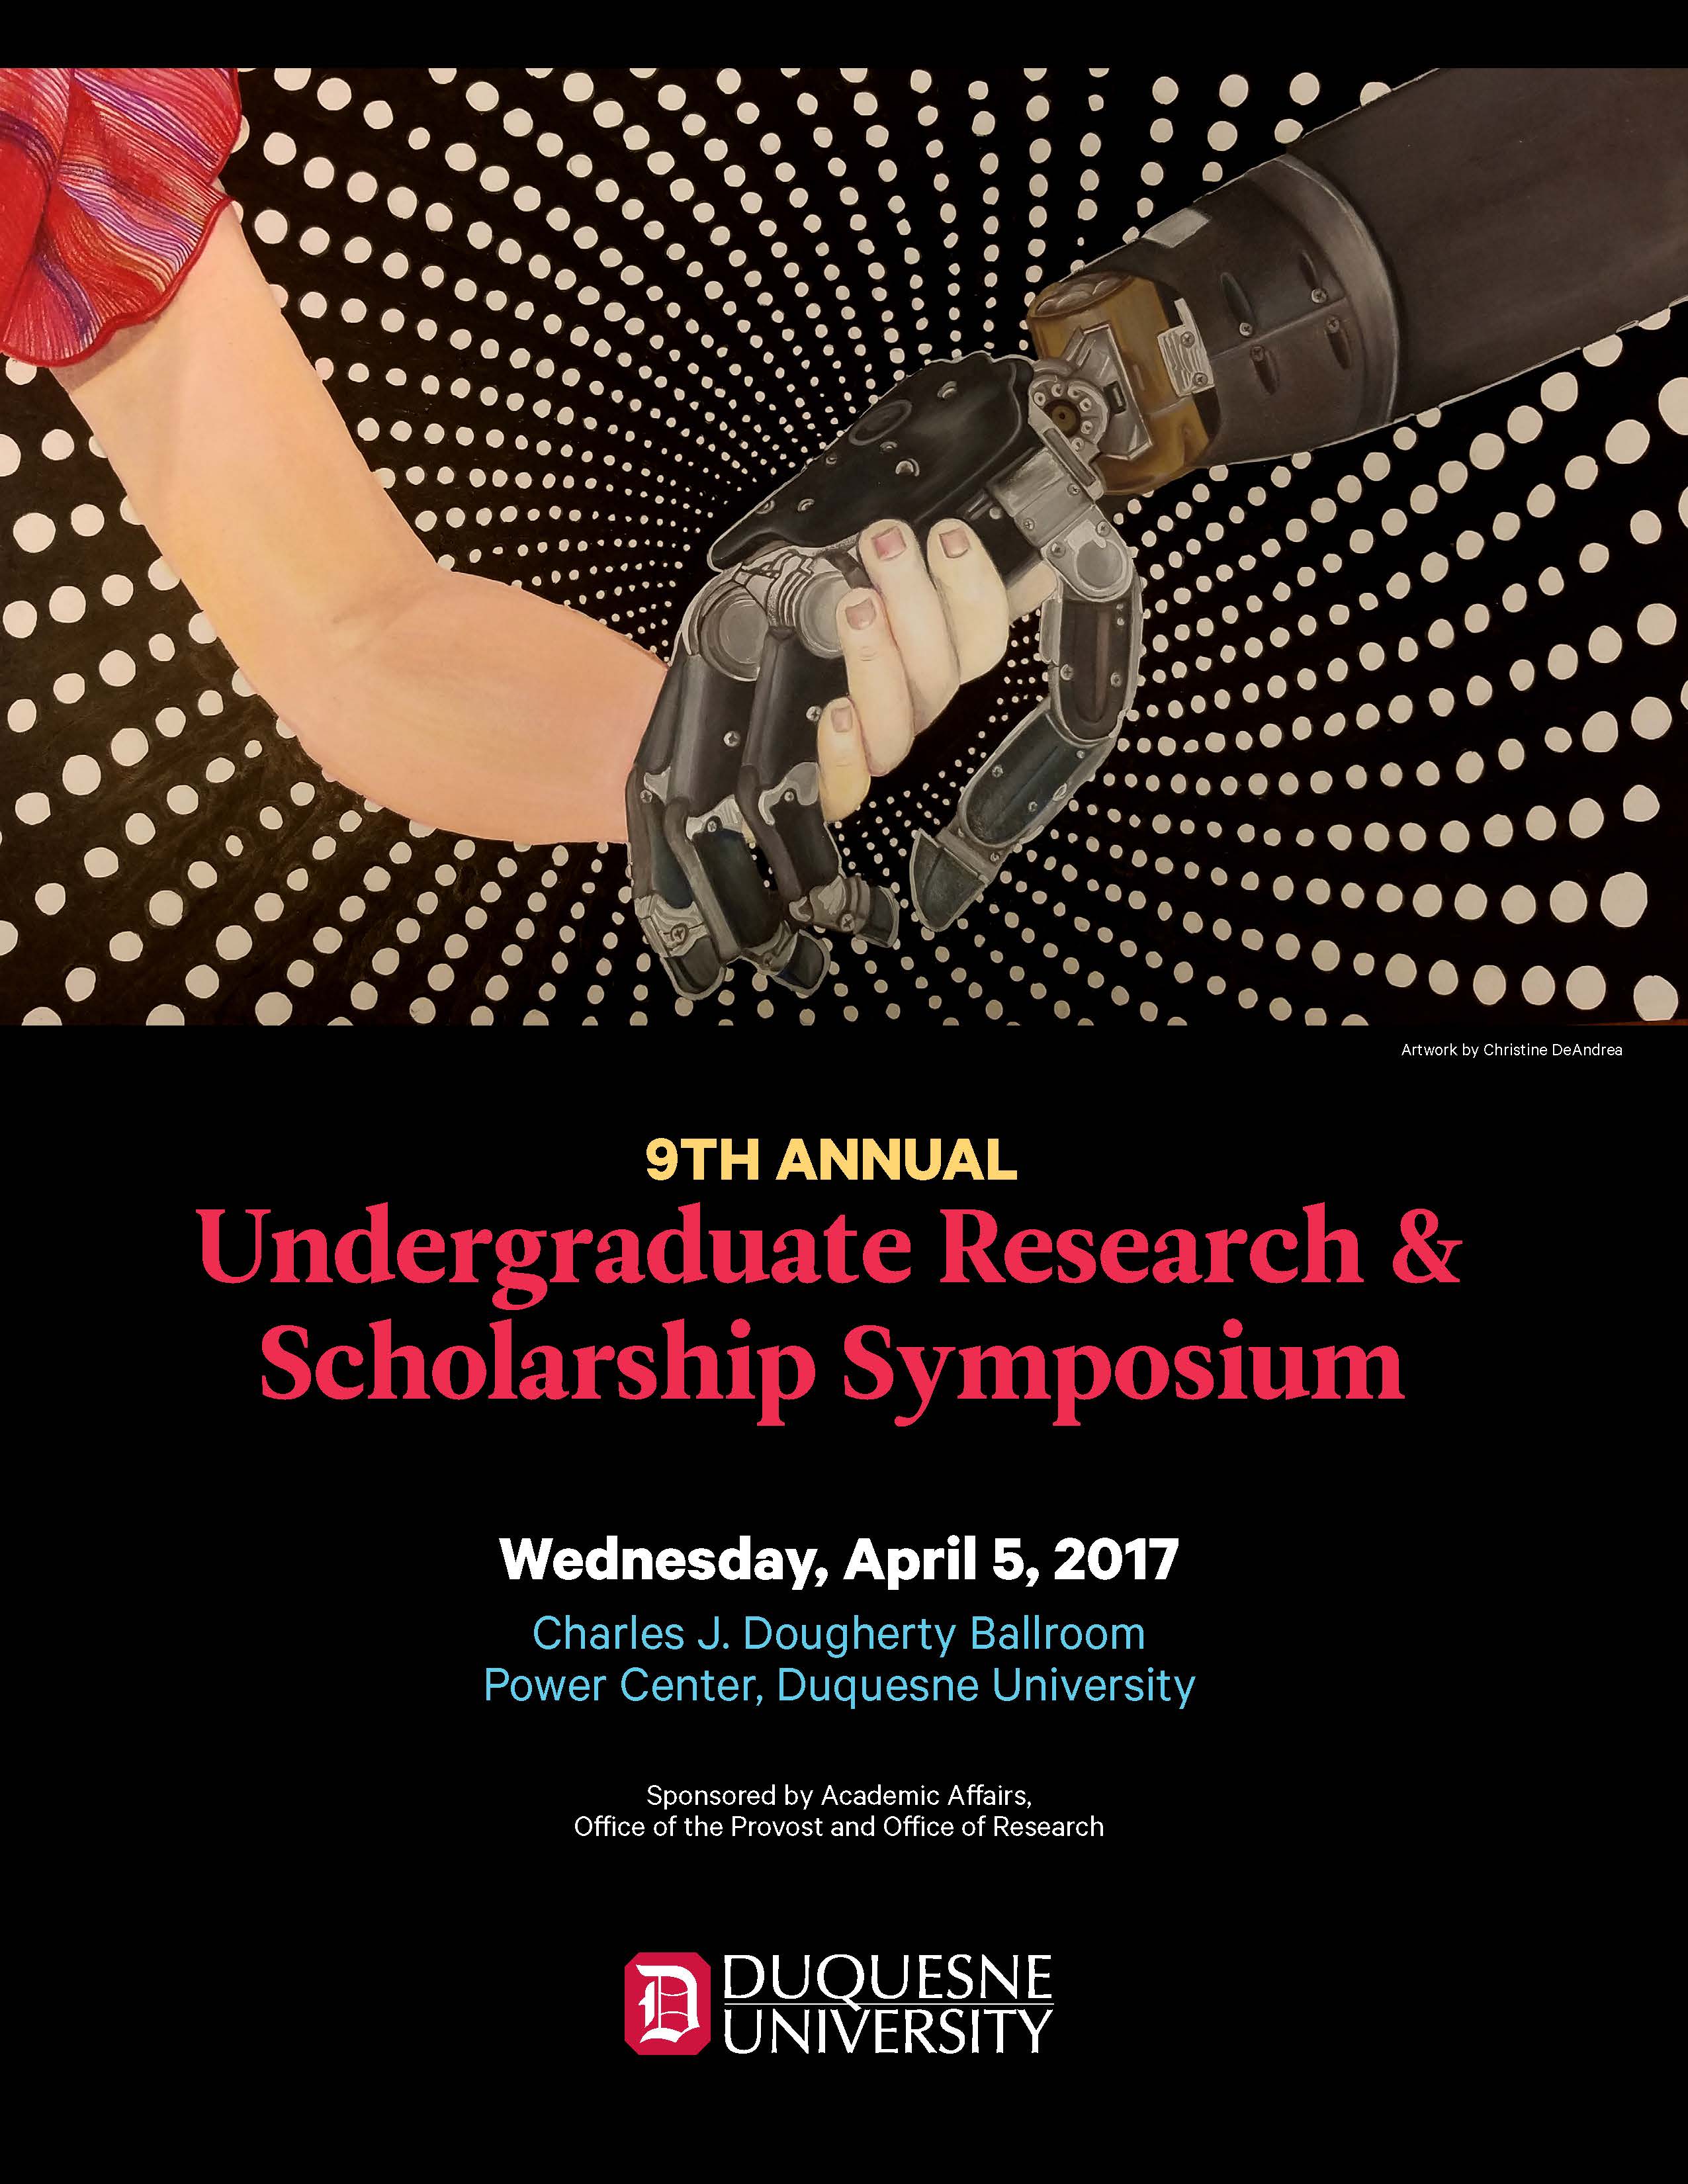 9th Annual Undergraduate Research & Scholarship Symposium